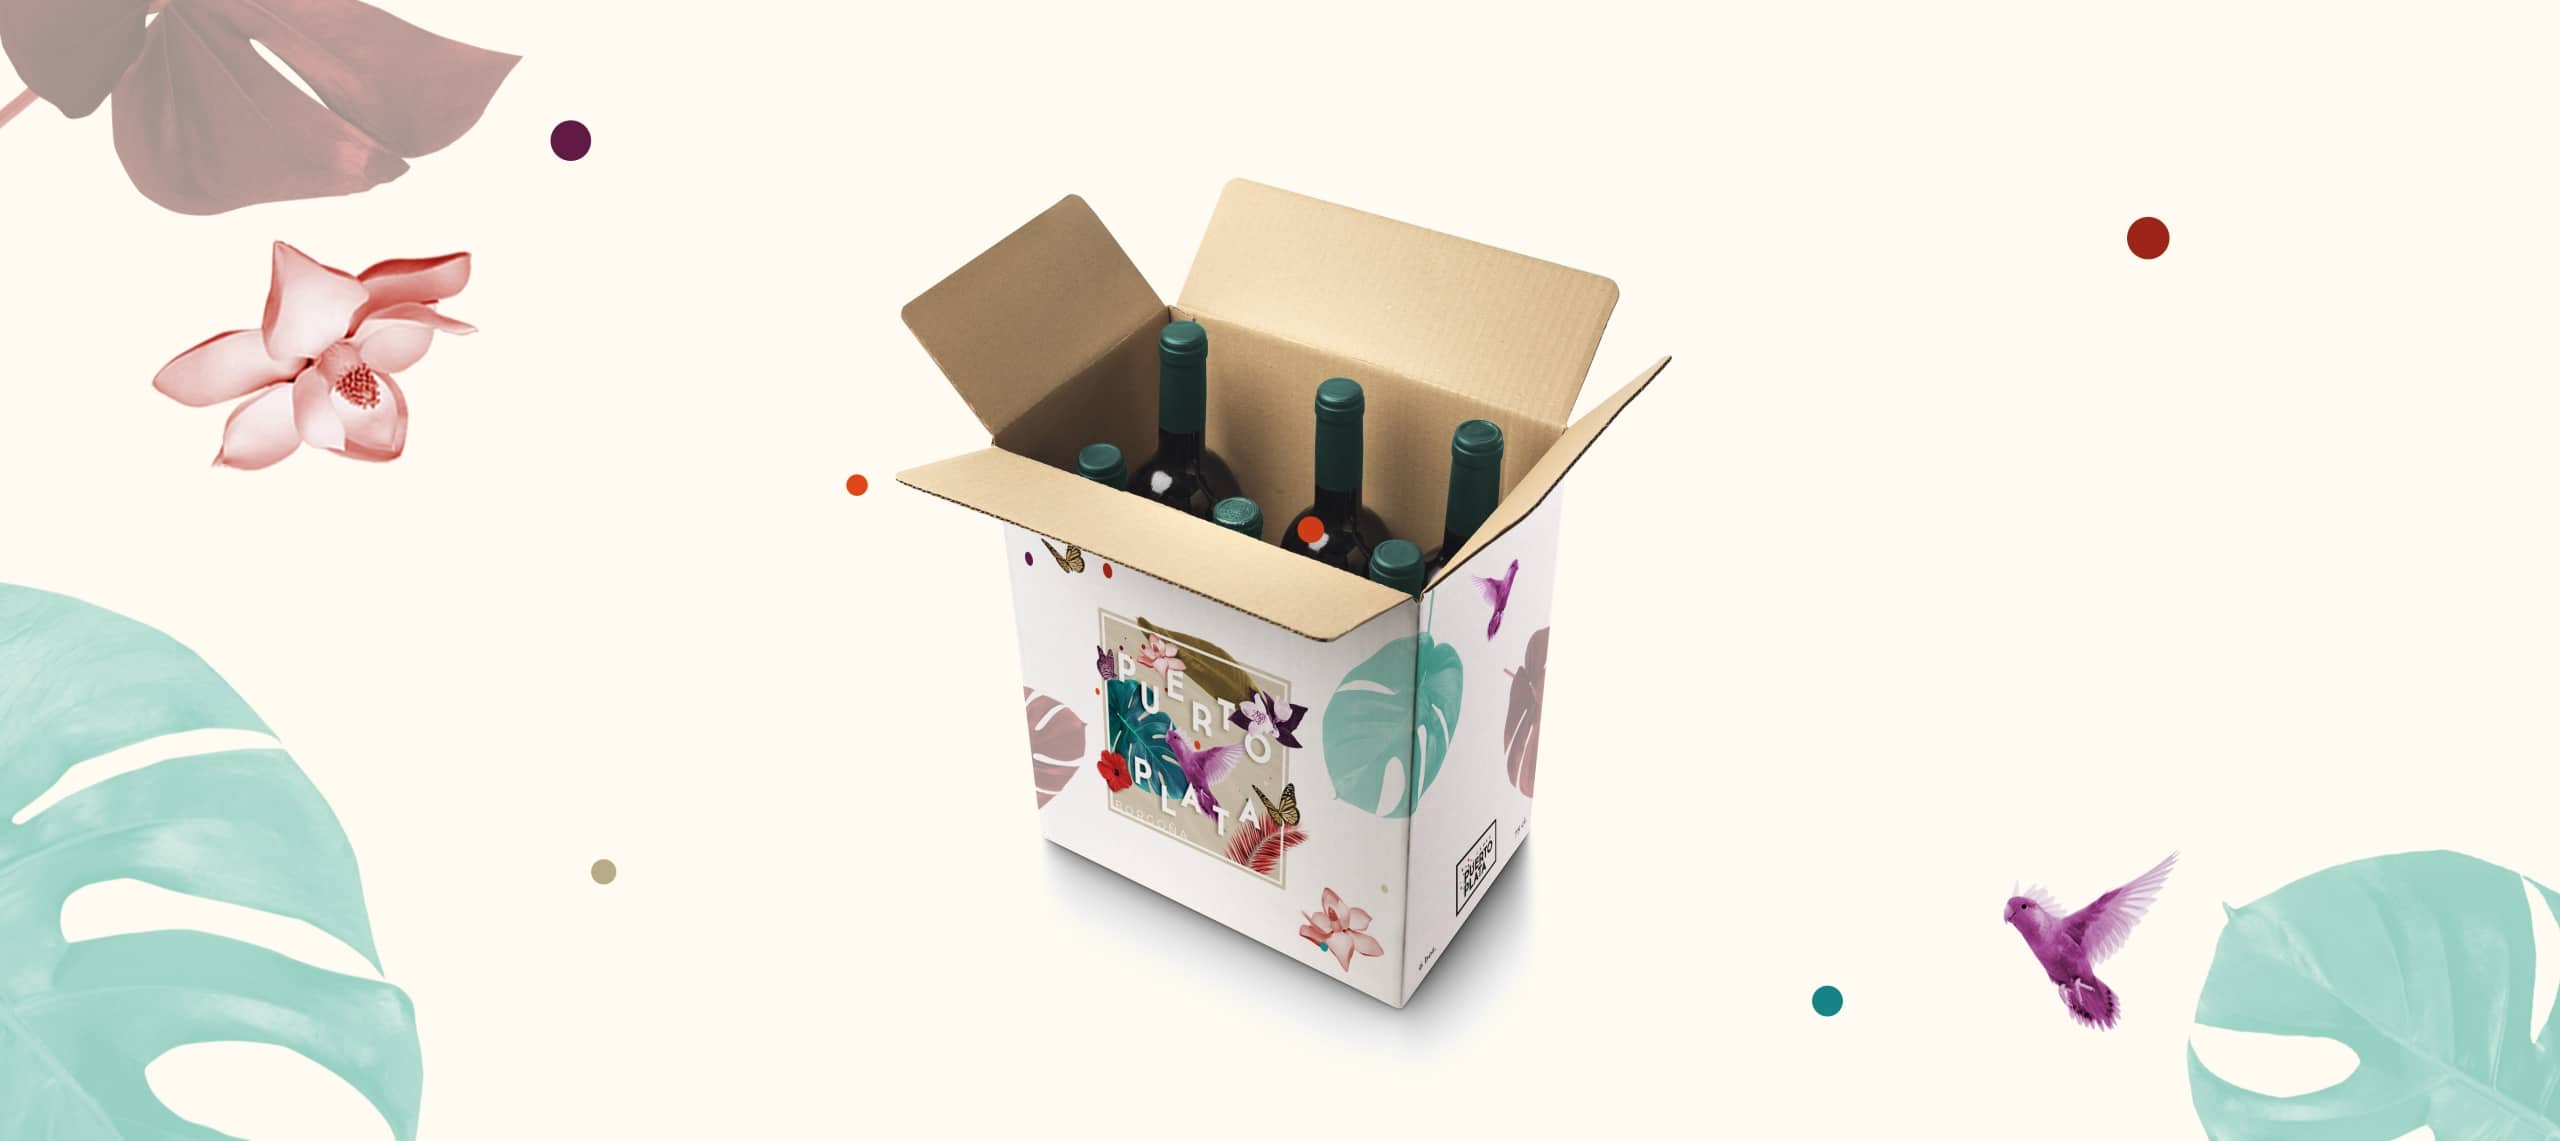 diseño de envases y etiquetas para vinos como ejemplo de un buen packaging